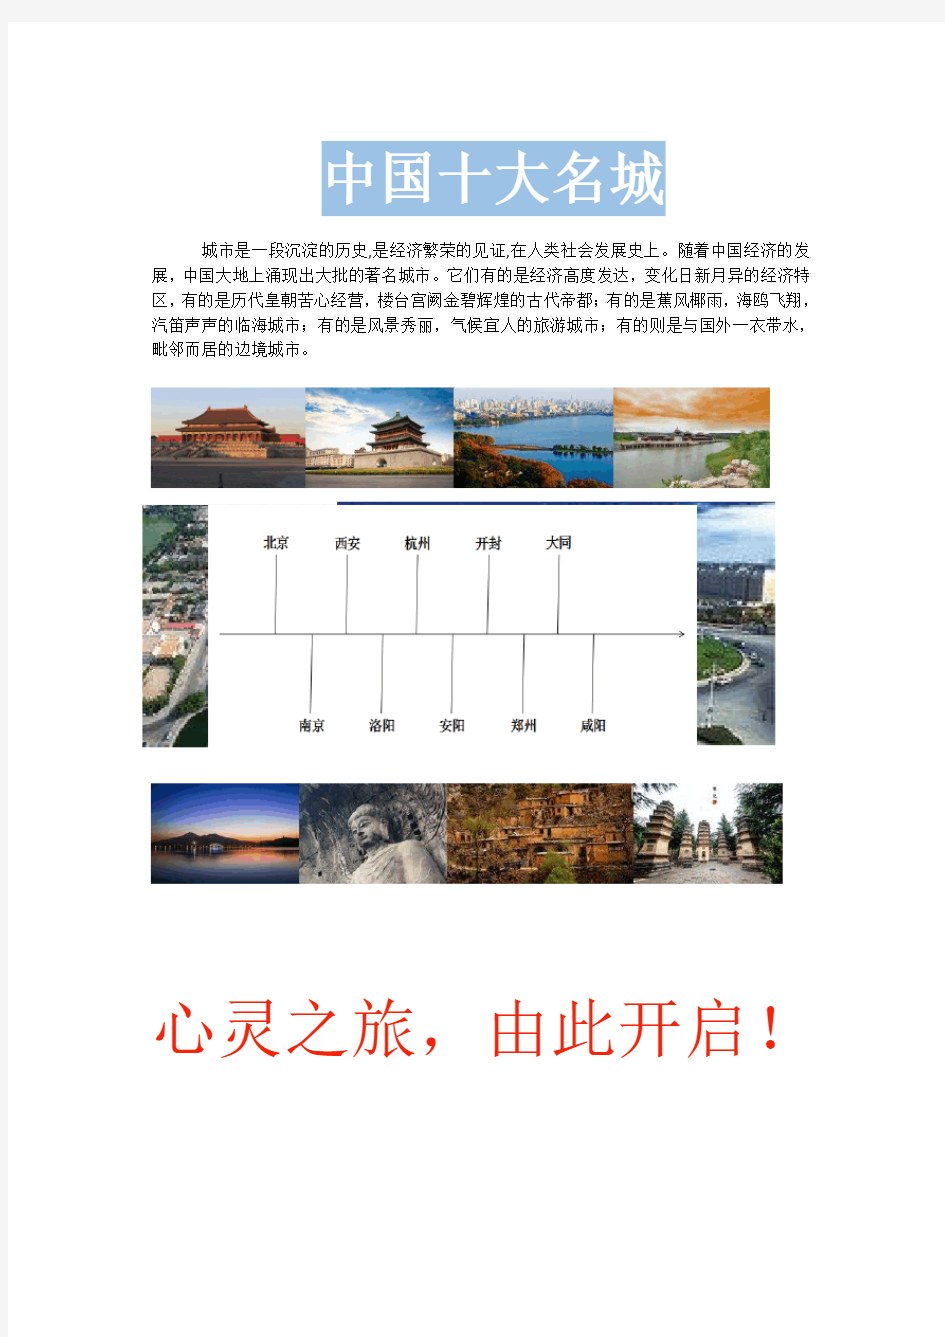 中国名城宣传(江苏开放大学计算机应用基础作业)